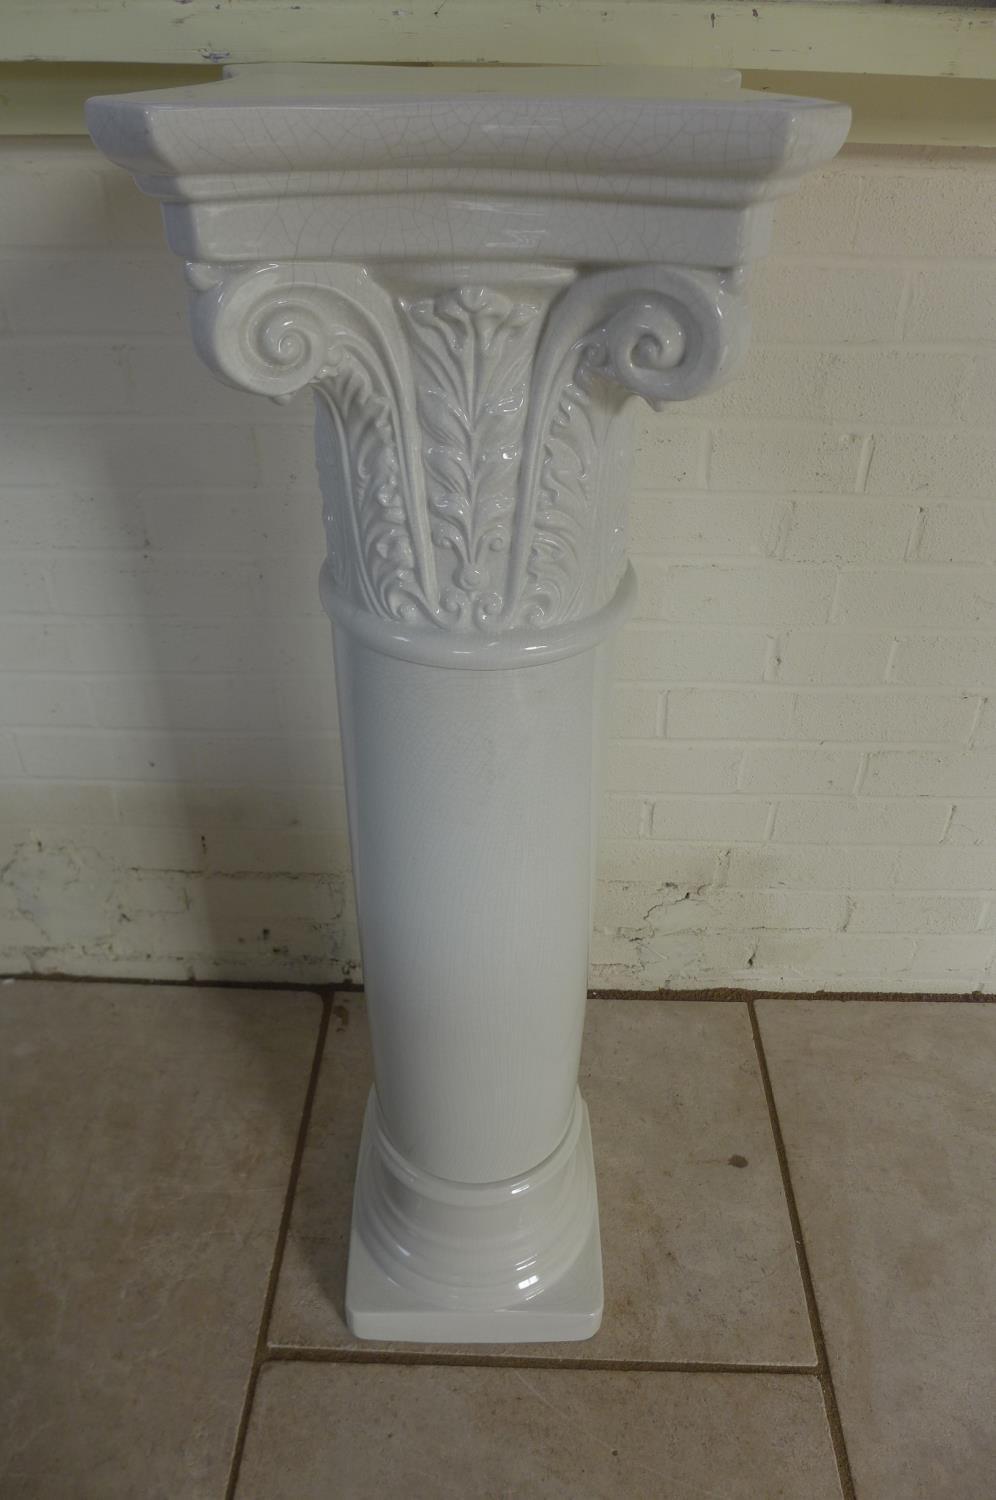 A ceramic column statue stand, 114cm tall x 34cm x 34cm